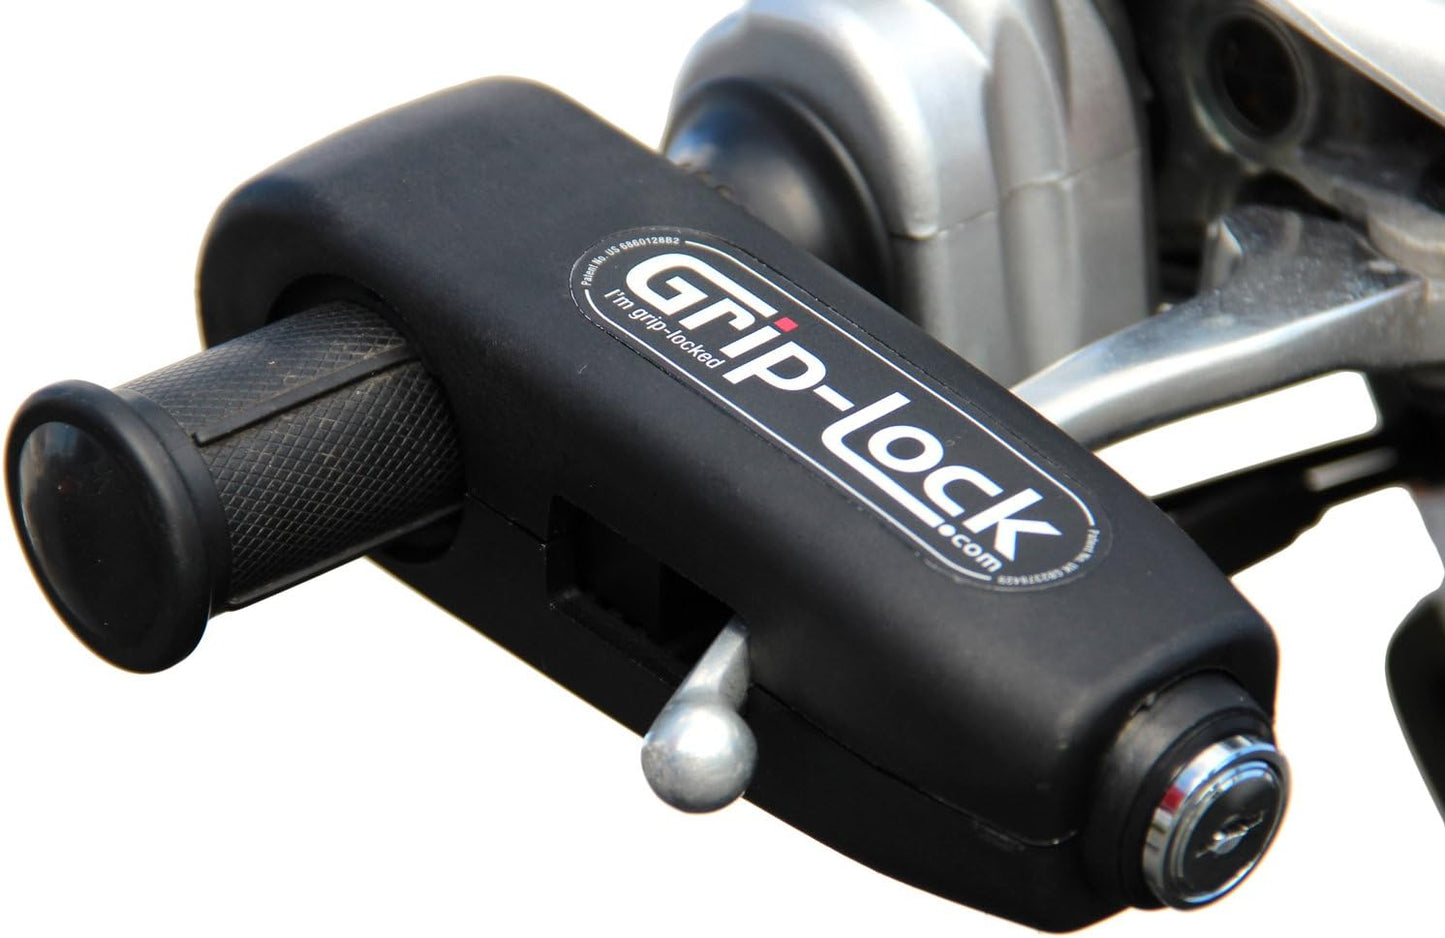 GRIP-LOCK Motorcycle Security Lock